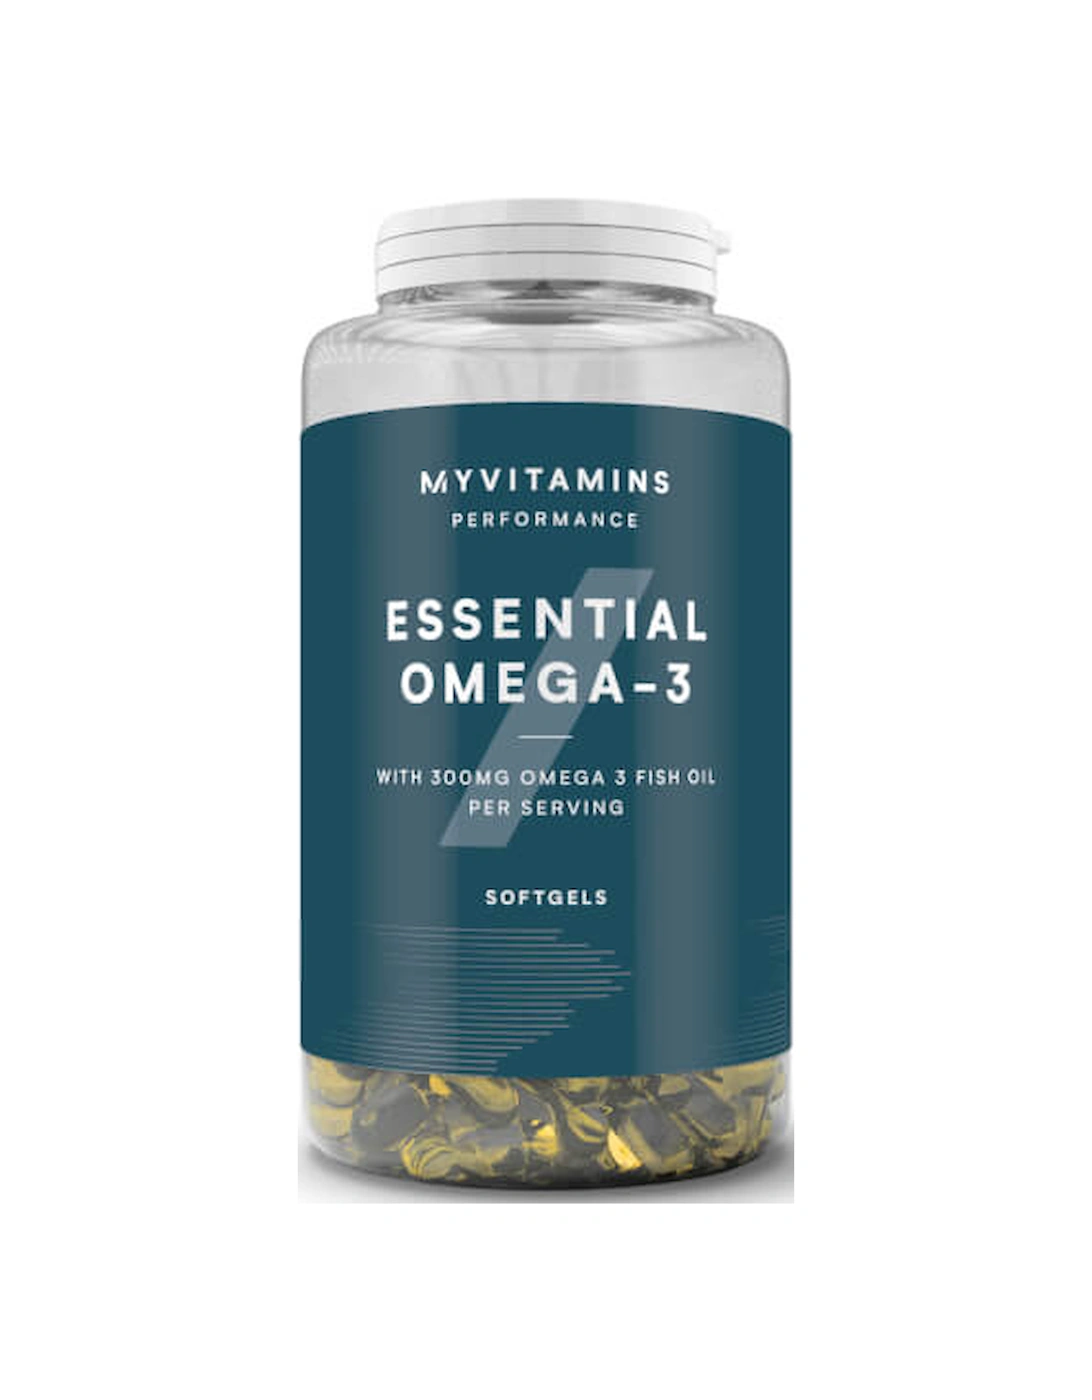 Omega 3, 1000 mg 18% EPA / 12% DHA, 250 Capsules - Myvitamins, 2 of 1